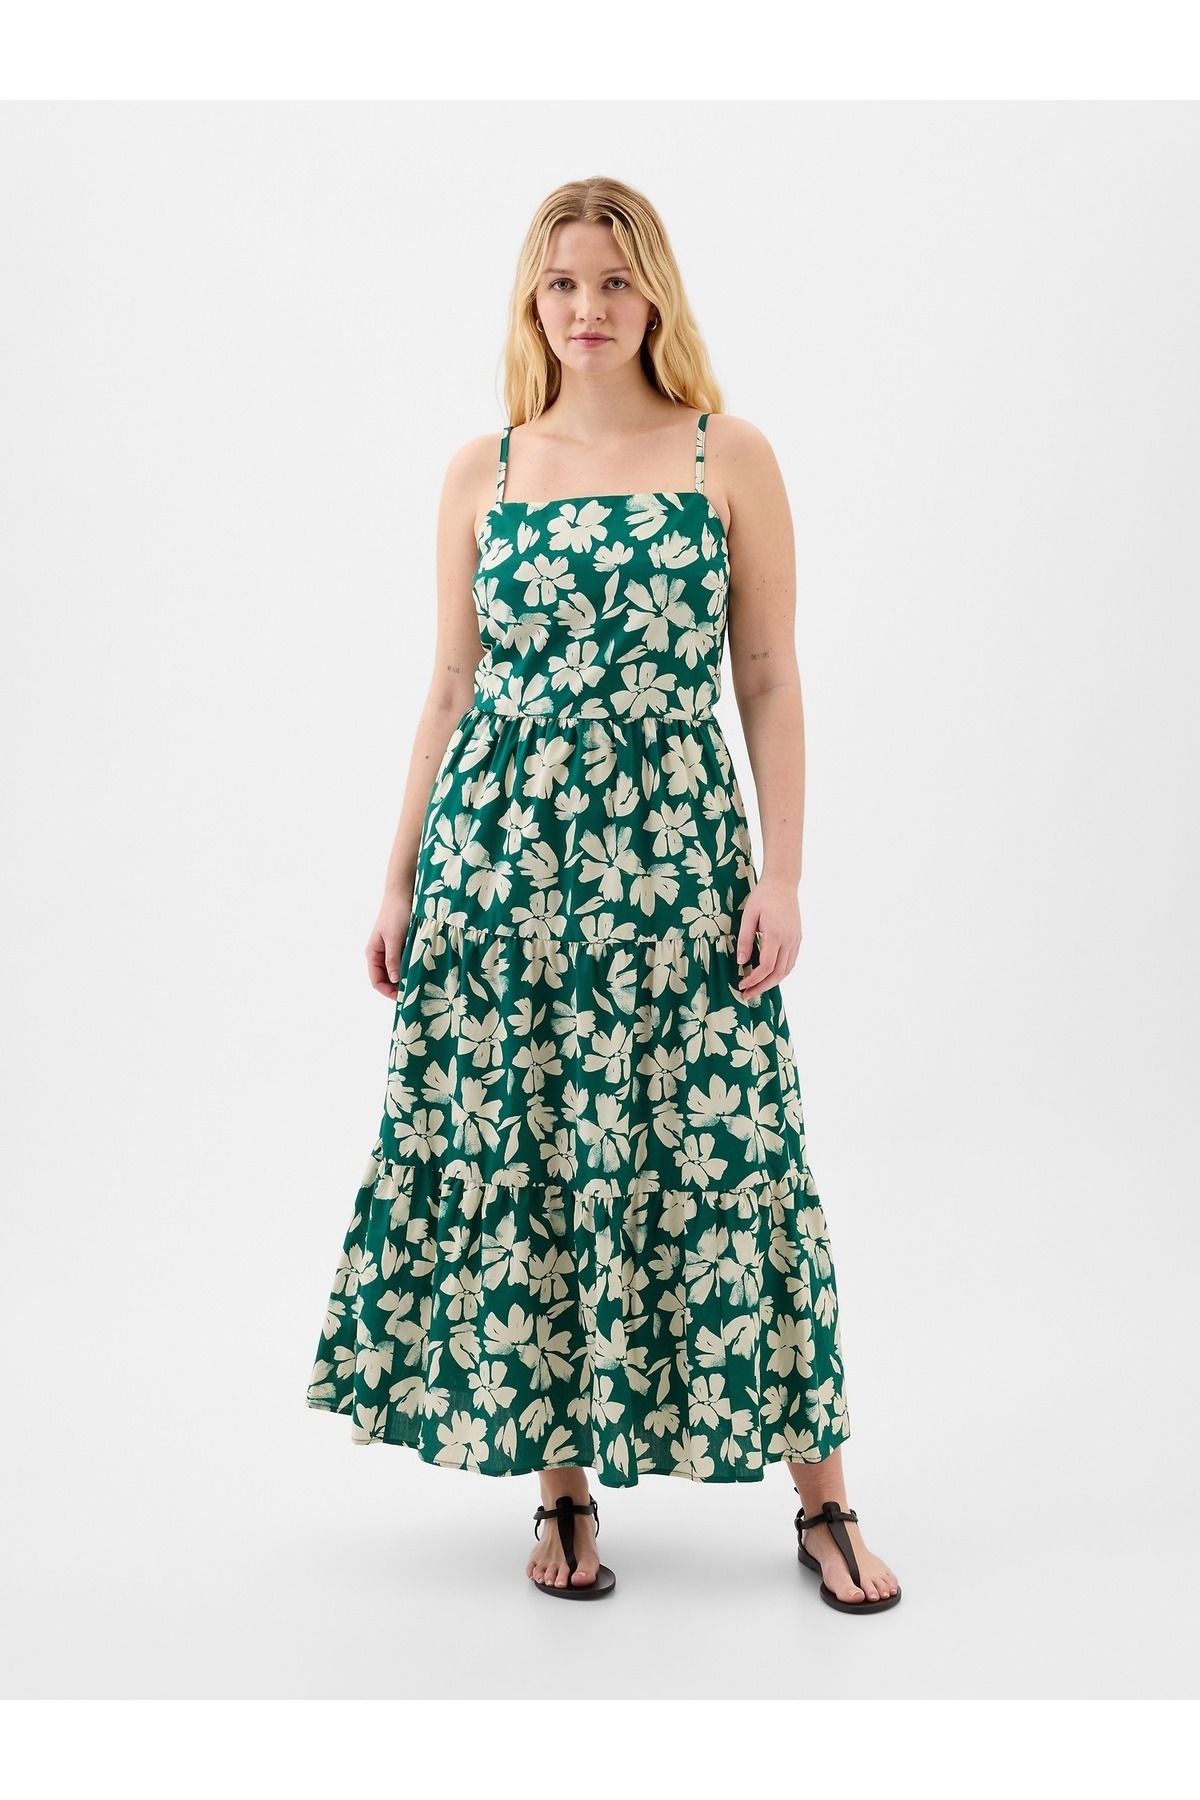 GAP Kadın Yeşil Çiçek Desenli Maxi Elbise